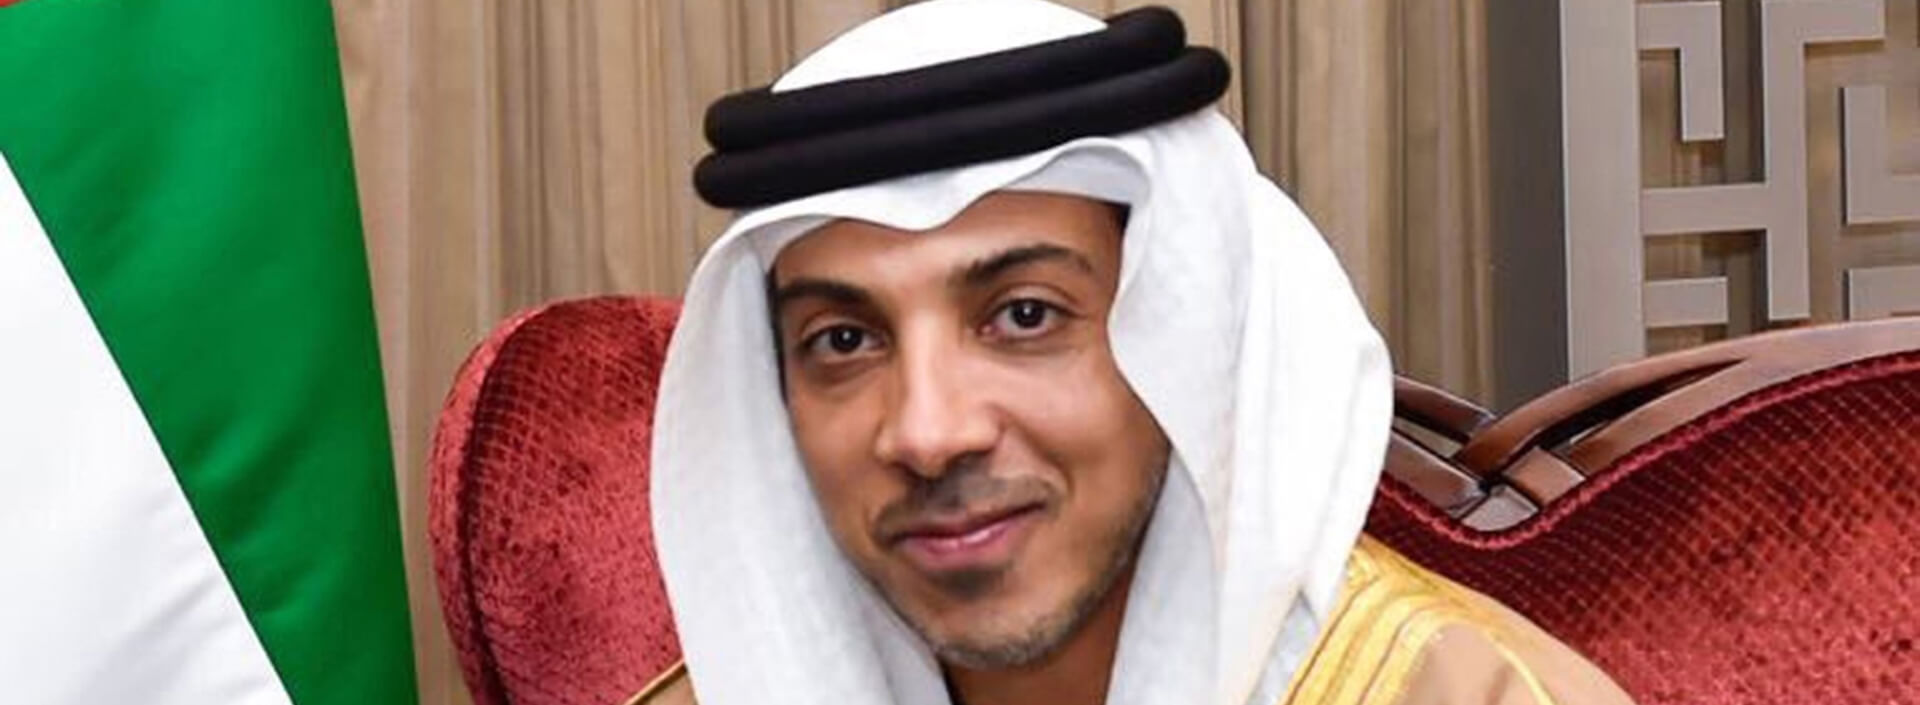 برعاية منصور بن زايد .. جهاز الإمارات للاستثمار يطلق استراتيجية لتعزيز الأهداف التنموية للدولة